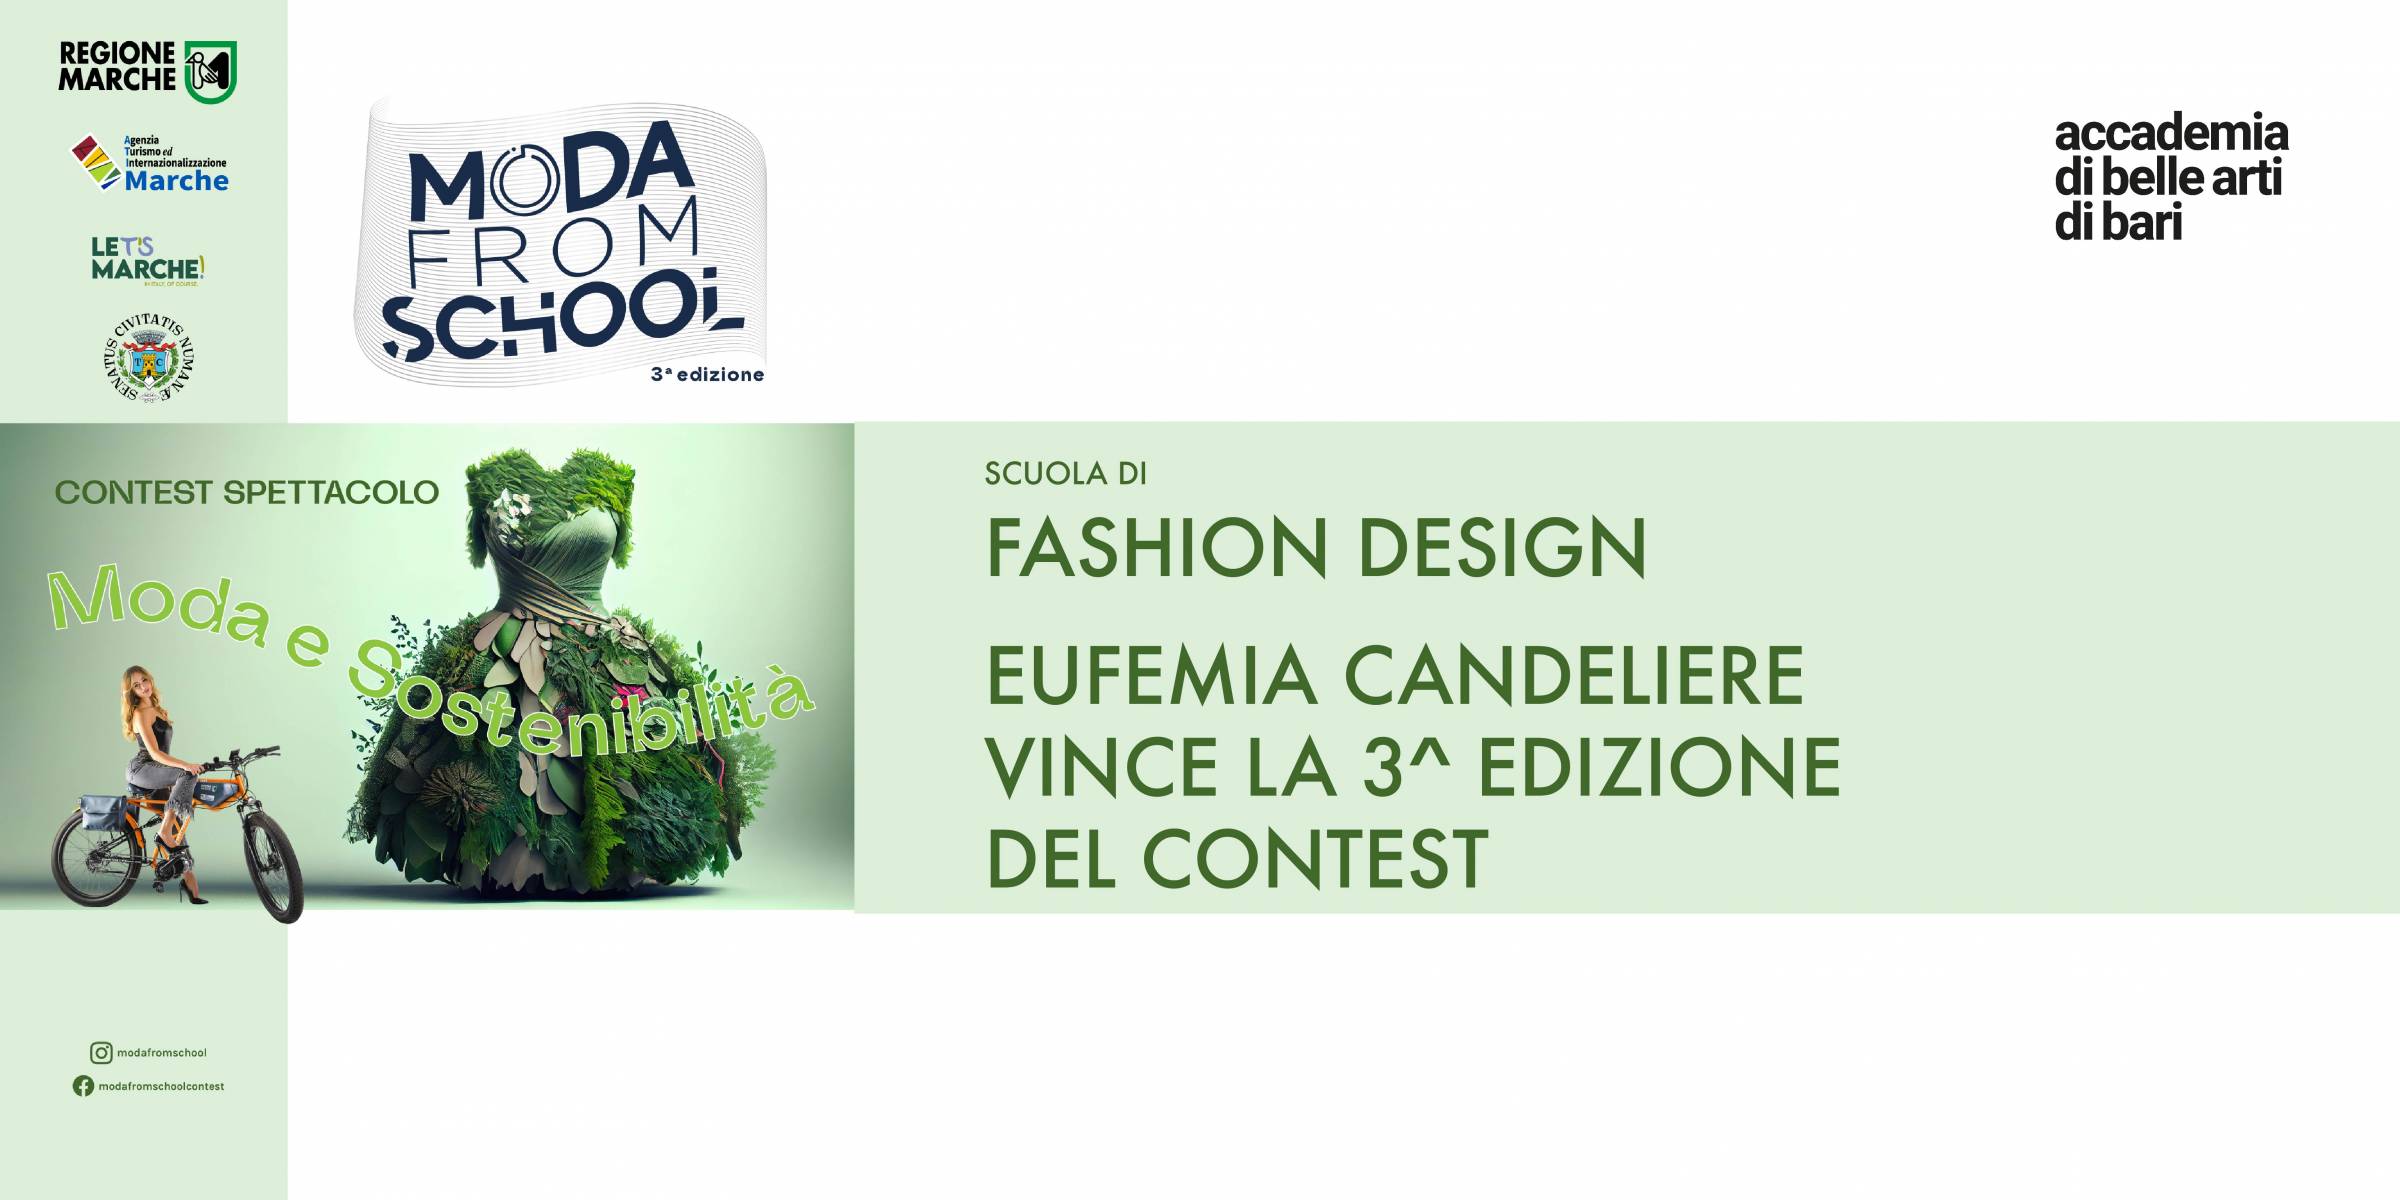 Moda from School: Eufemia Candeliere della Scuola di Fashion Design trionfa!